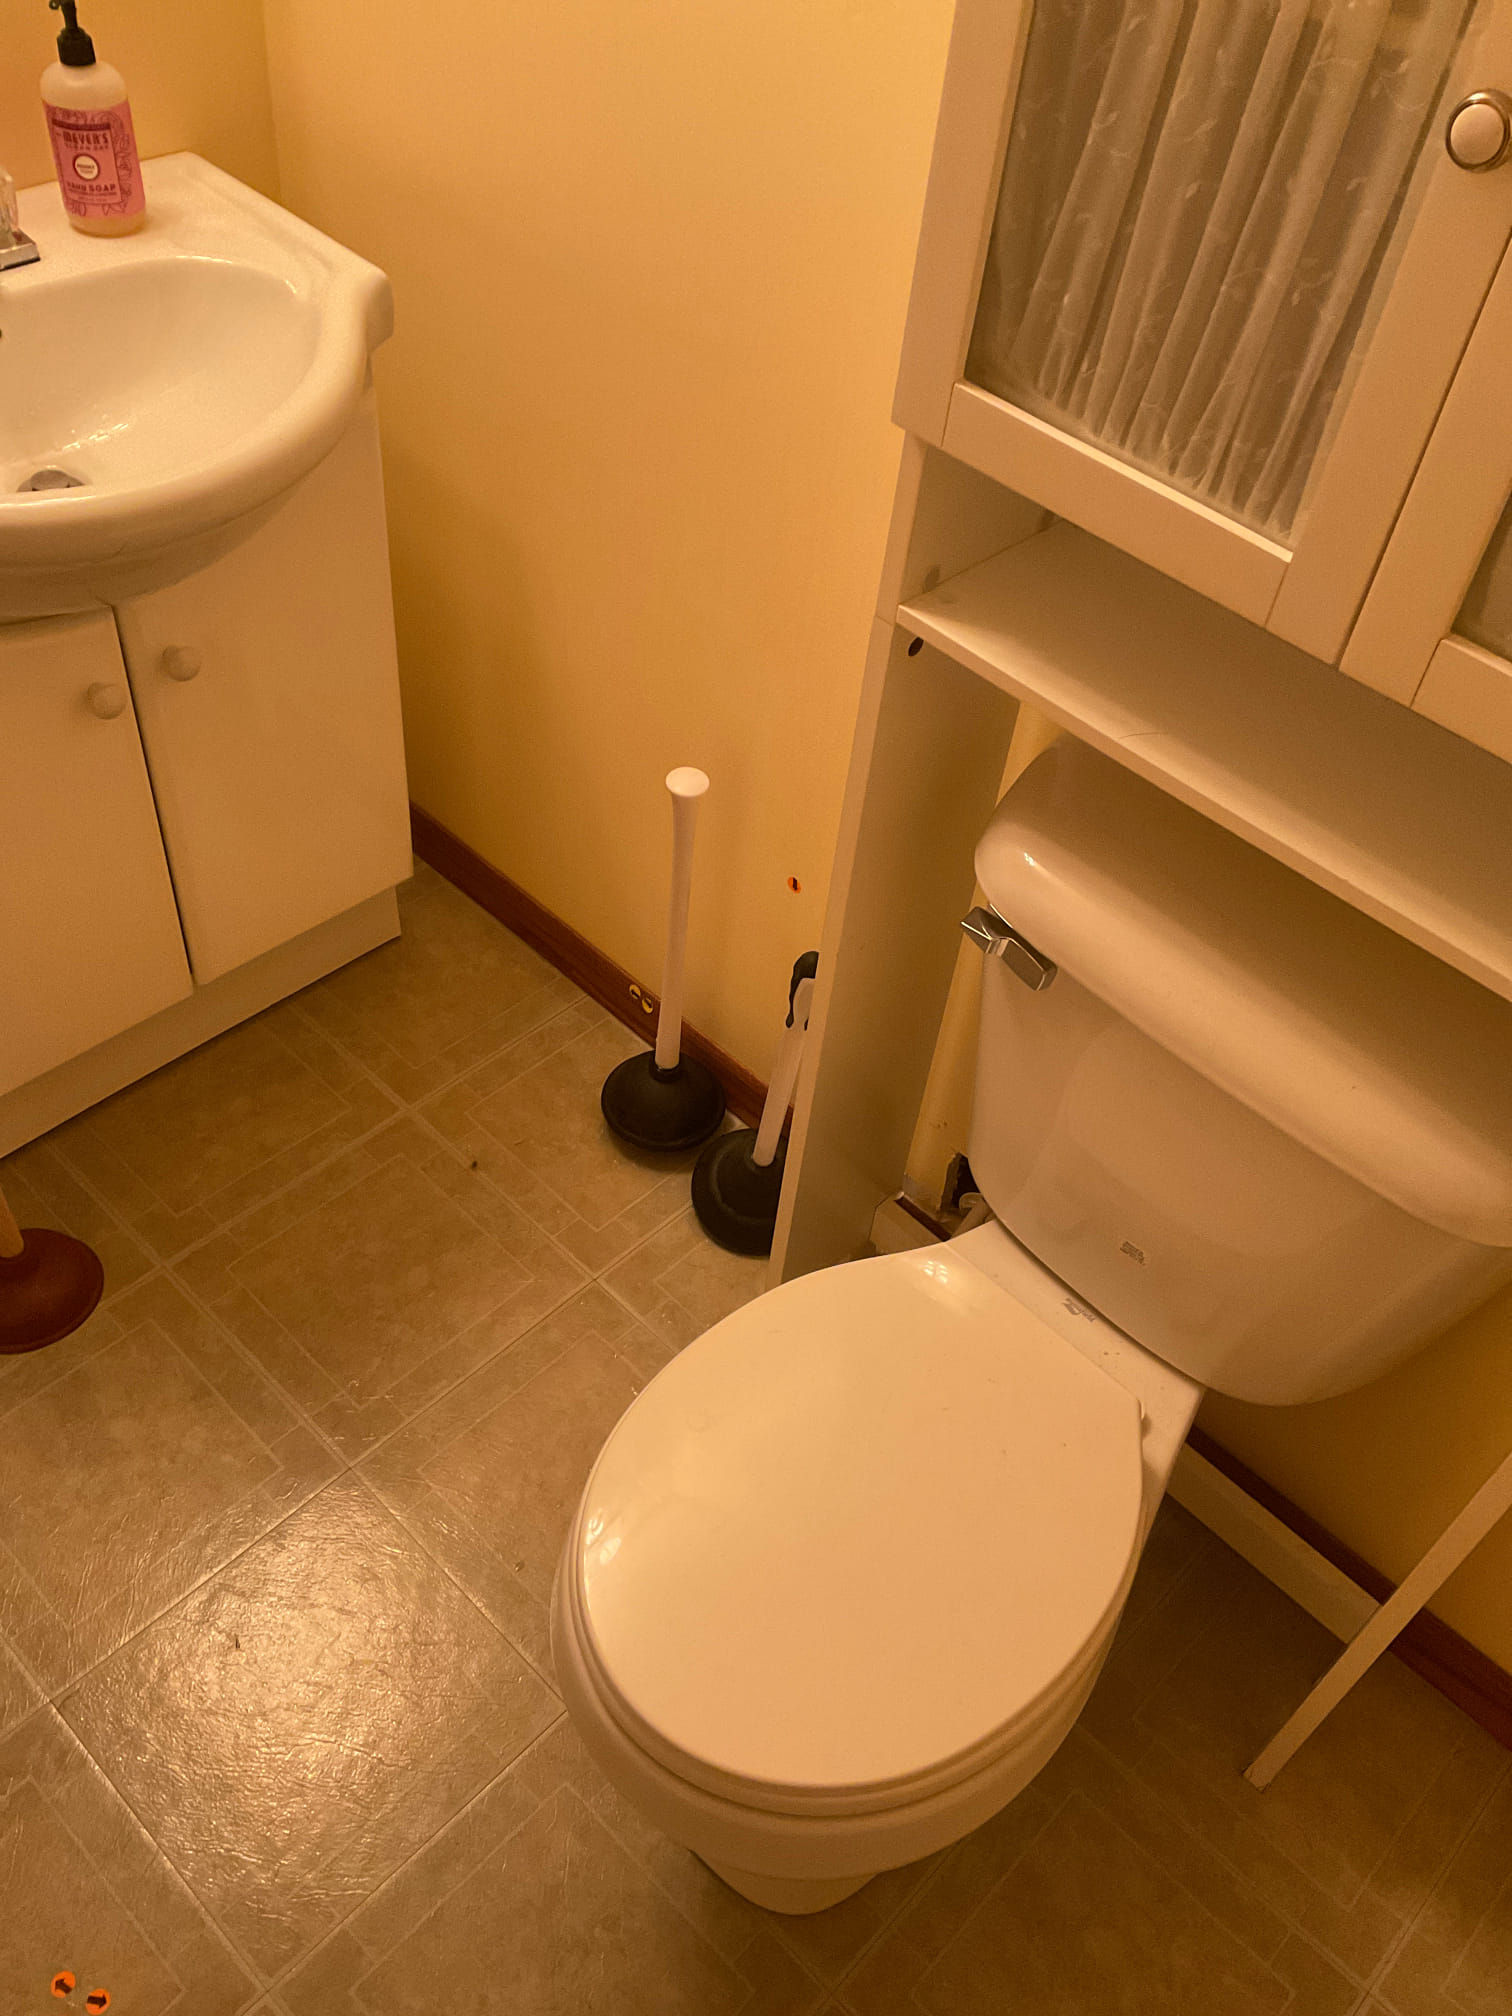 Wet bathroom due to toilet overflow